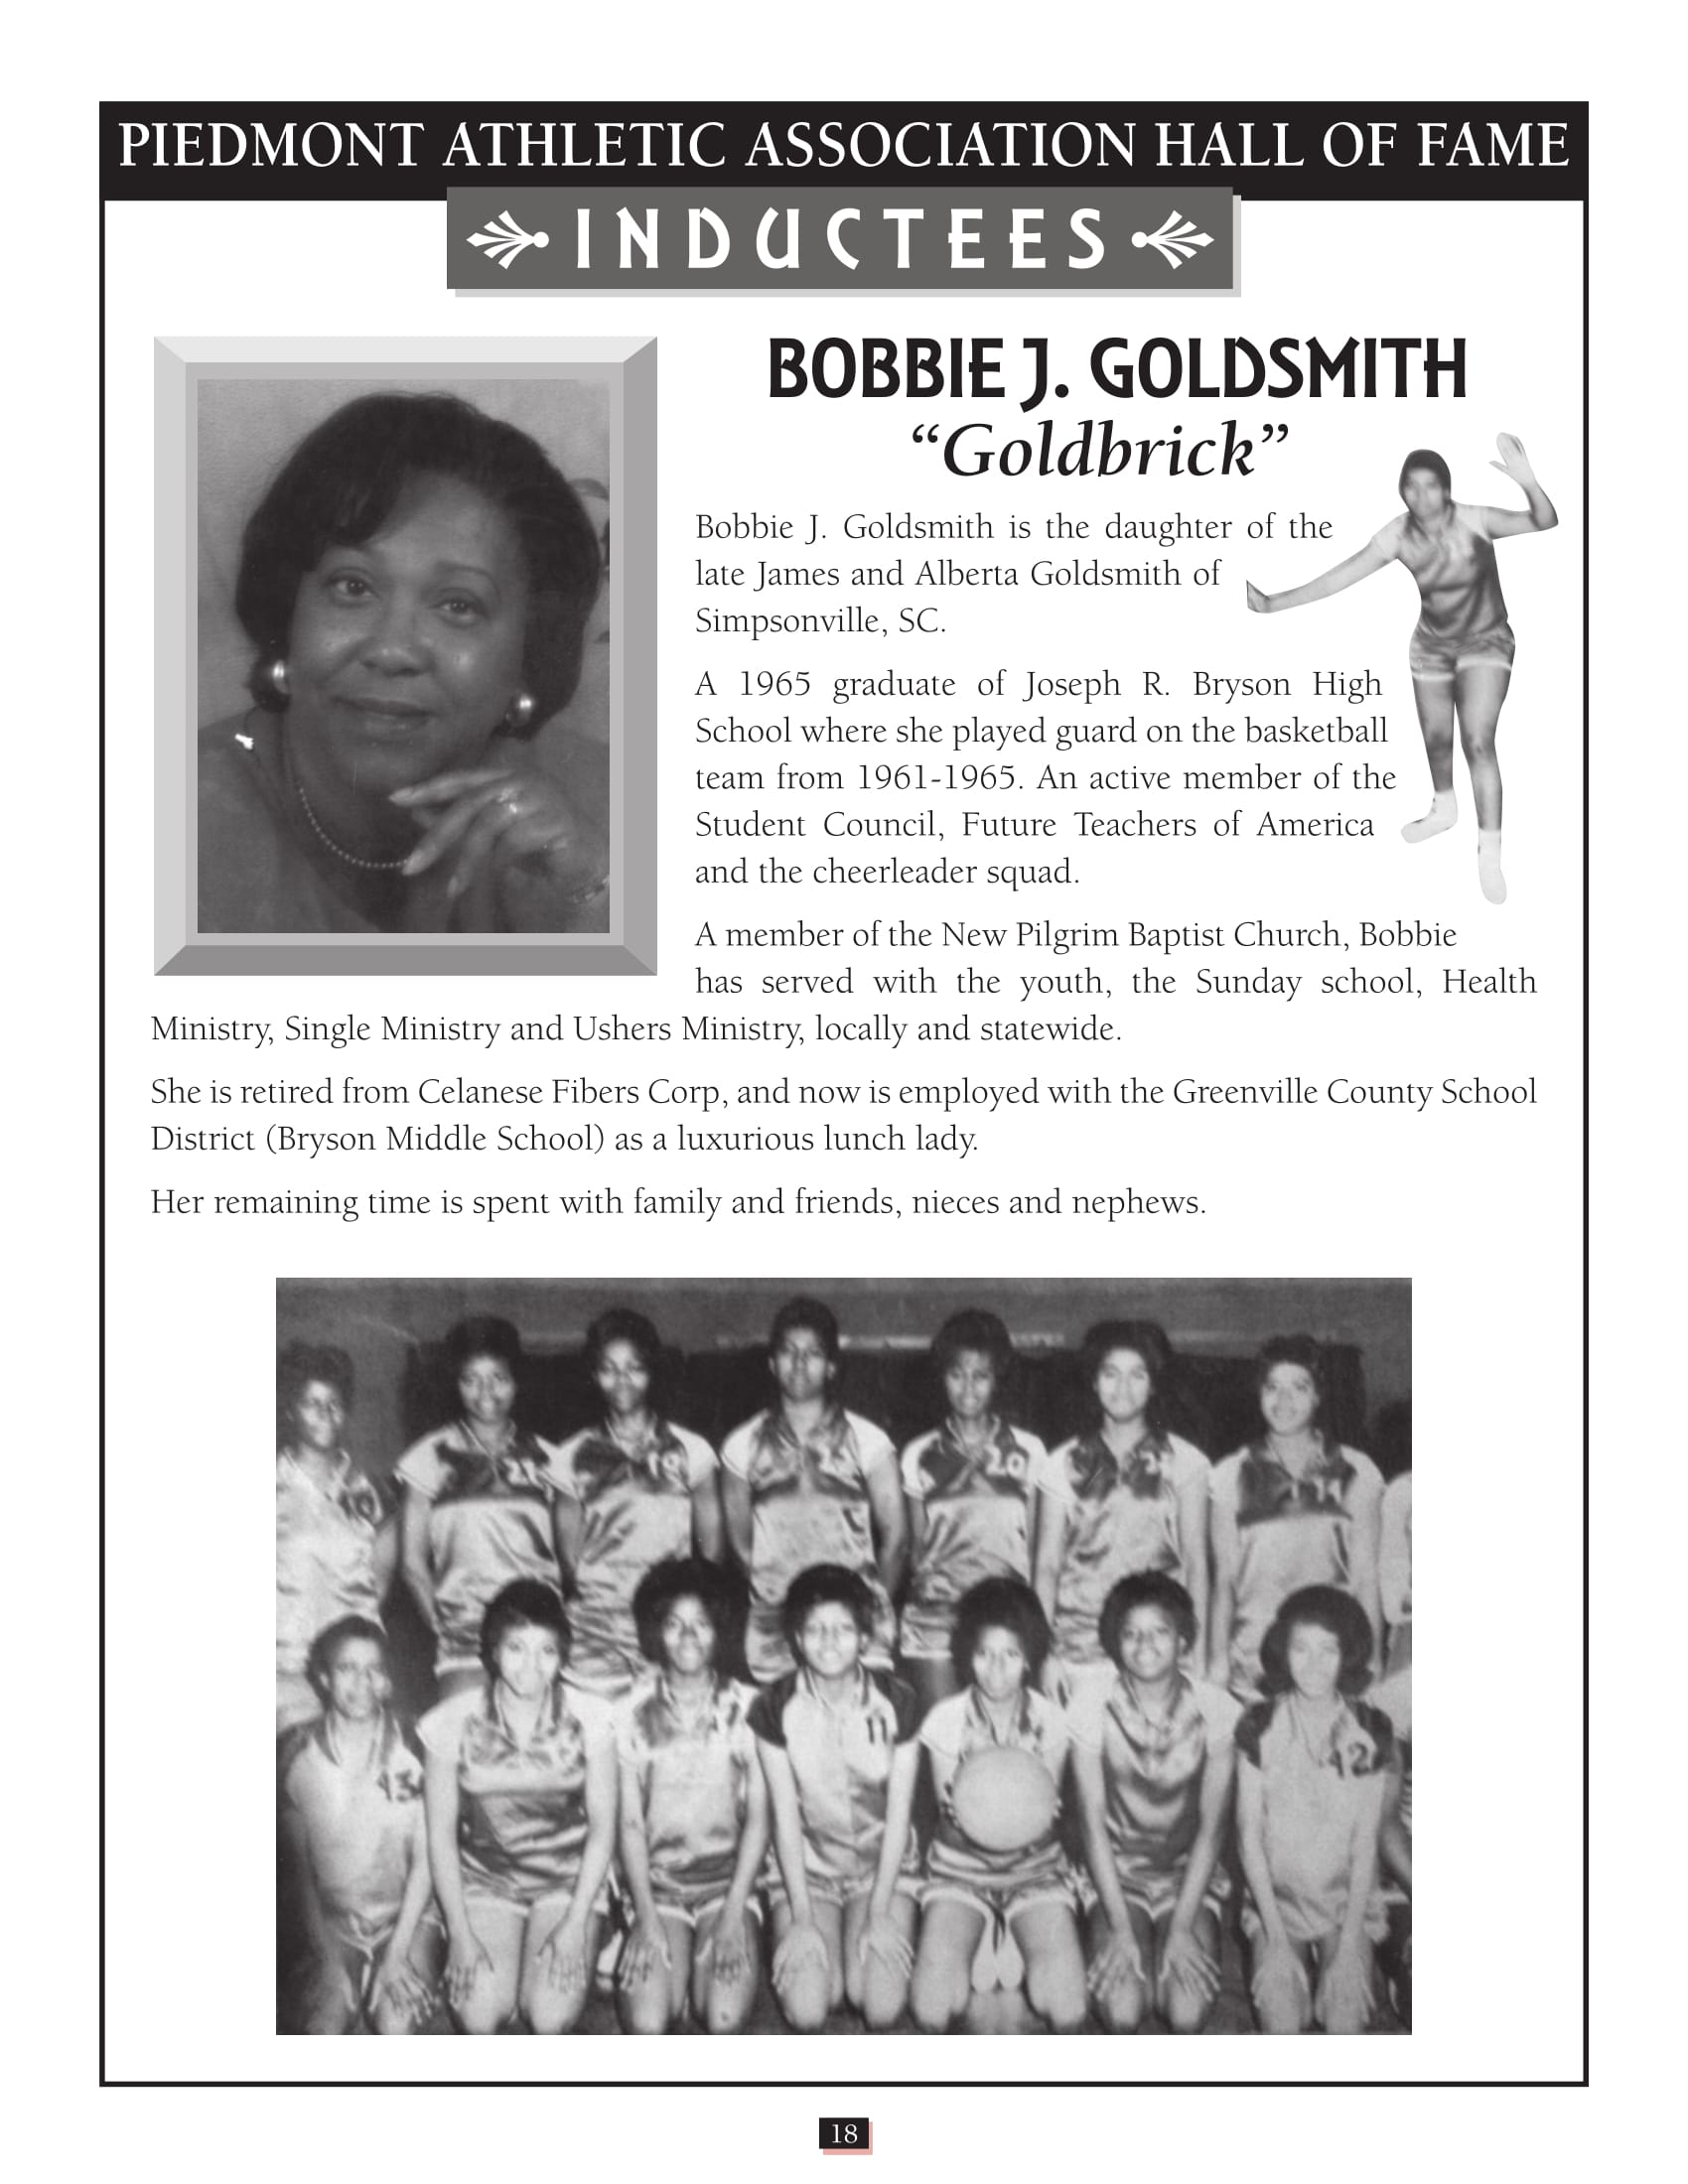 Bobbie Goldsmith